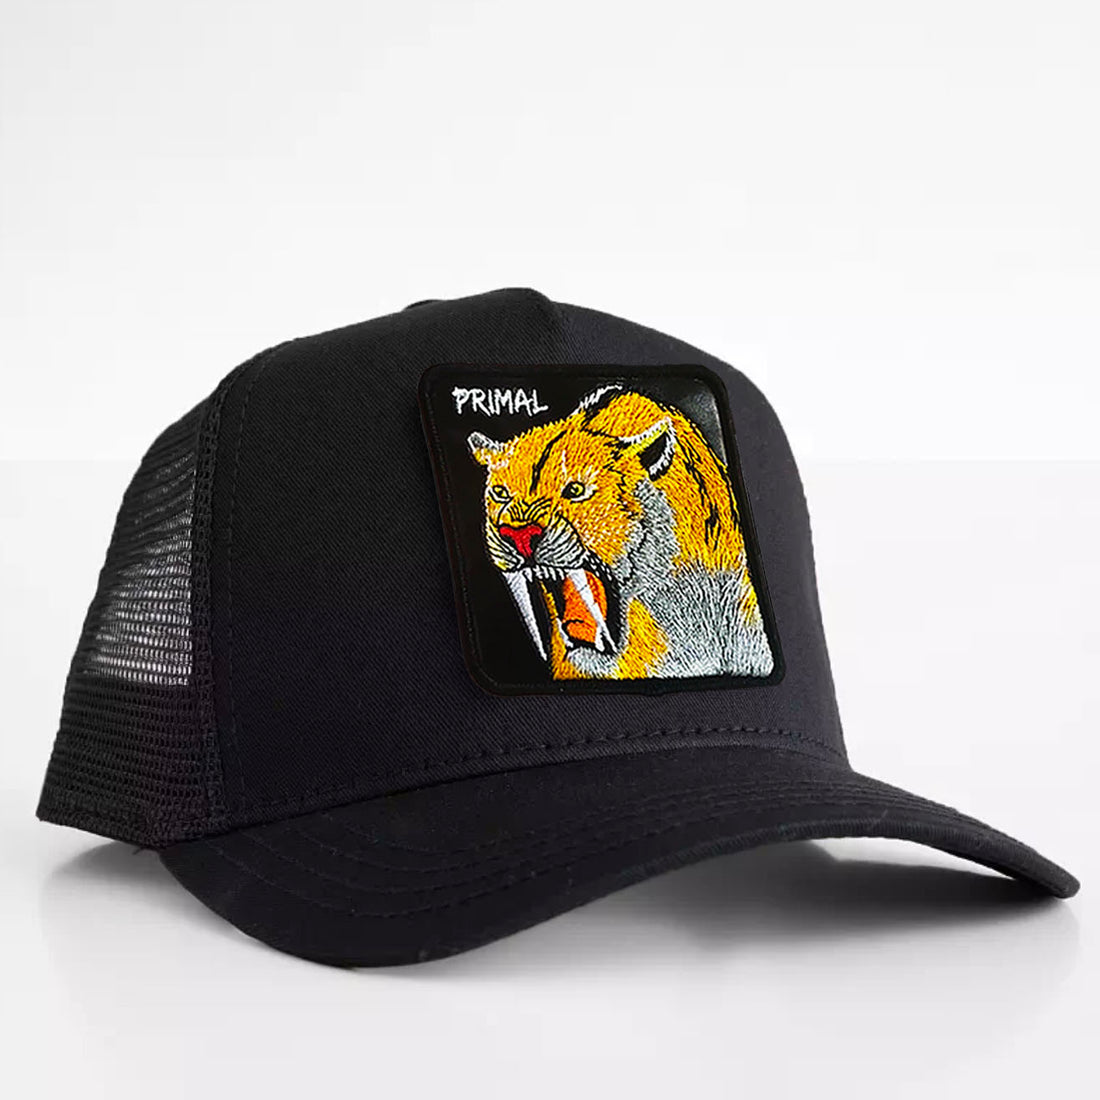 Saber-tooth Tiger - "primal" Trucker Hat